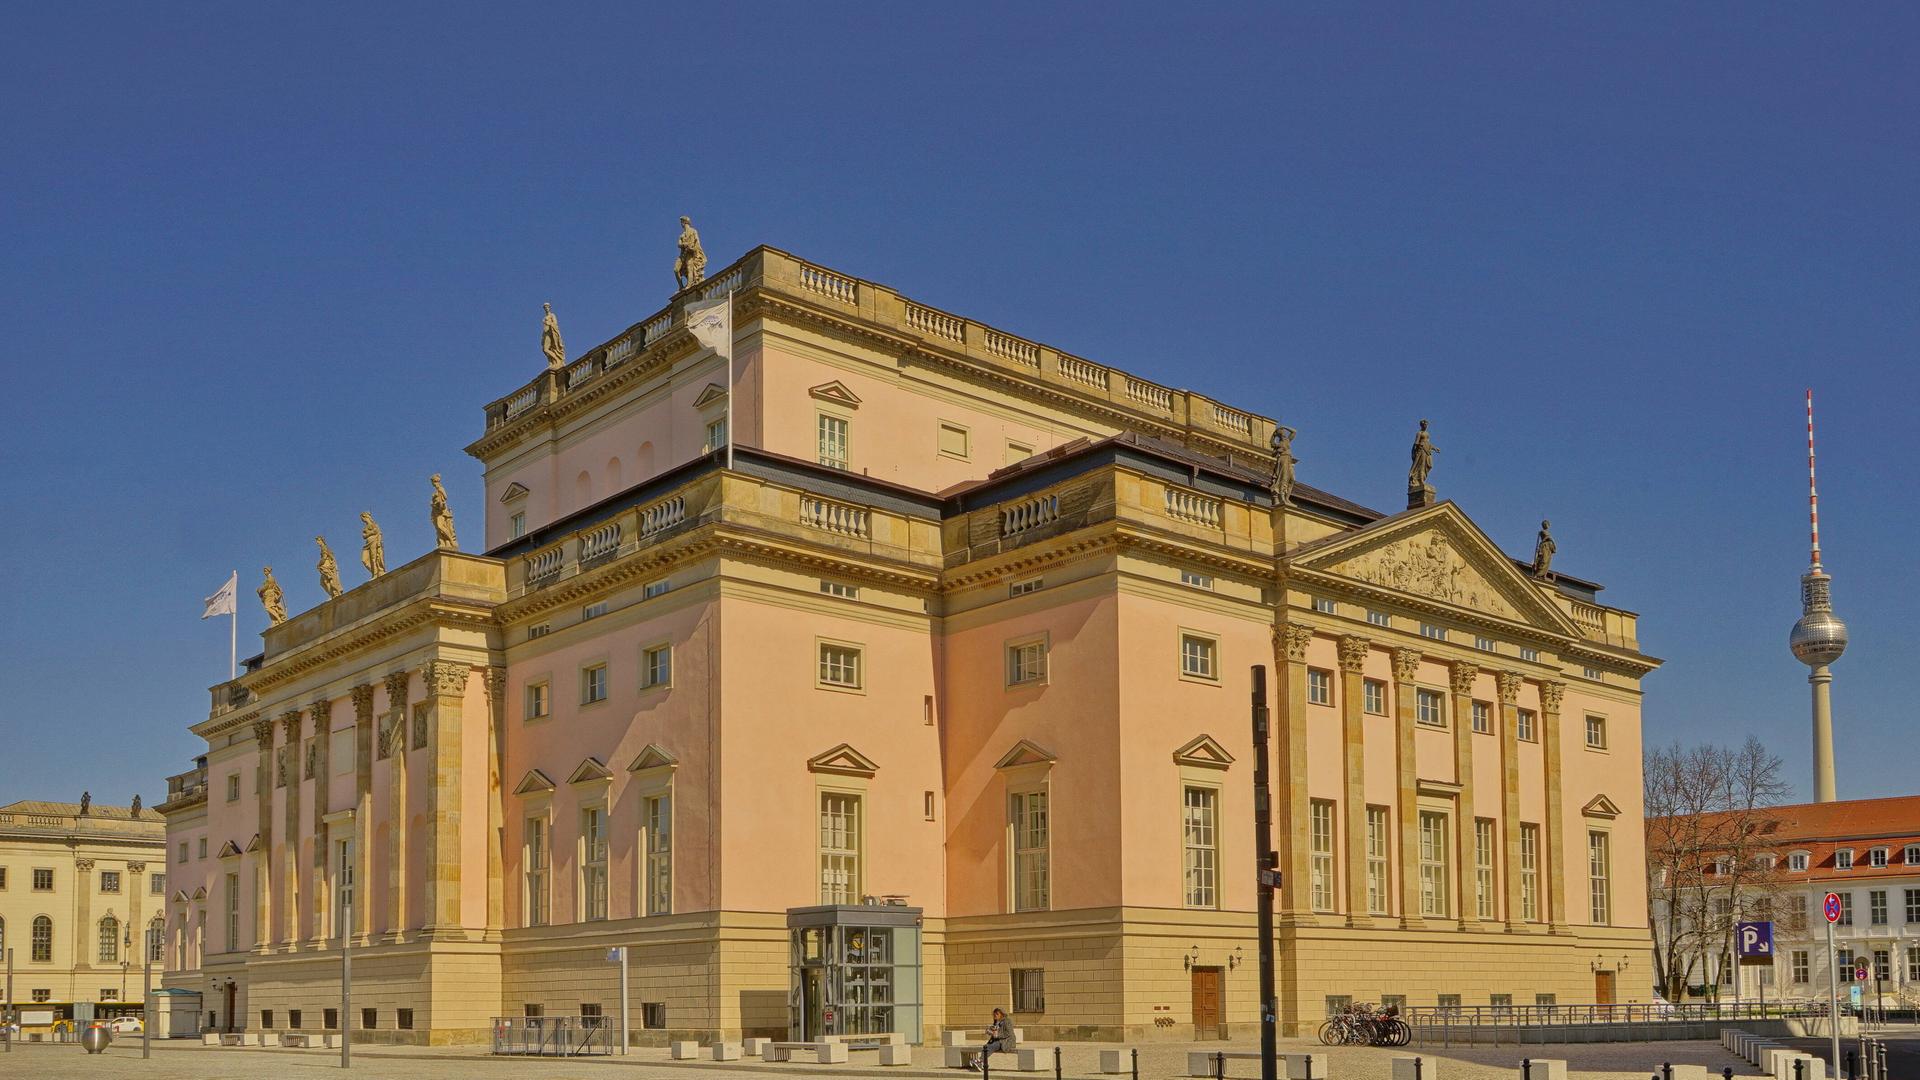 Das Gebäude der Deutschen Staatsoper Unter den Linden in Berlin von außen.